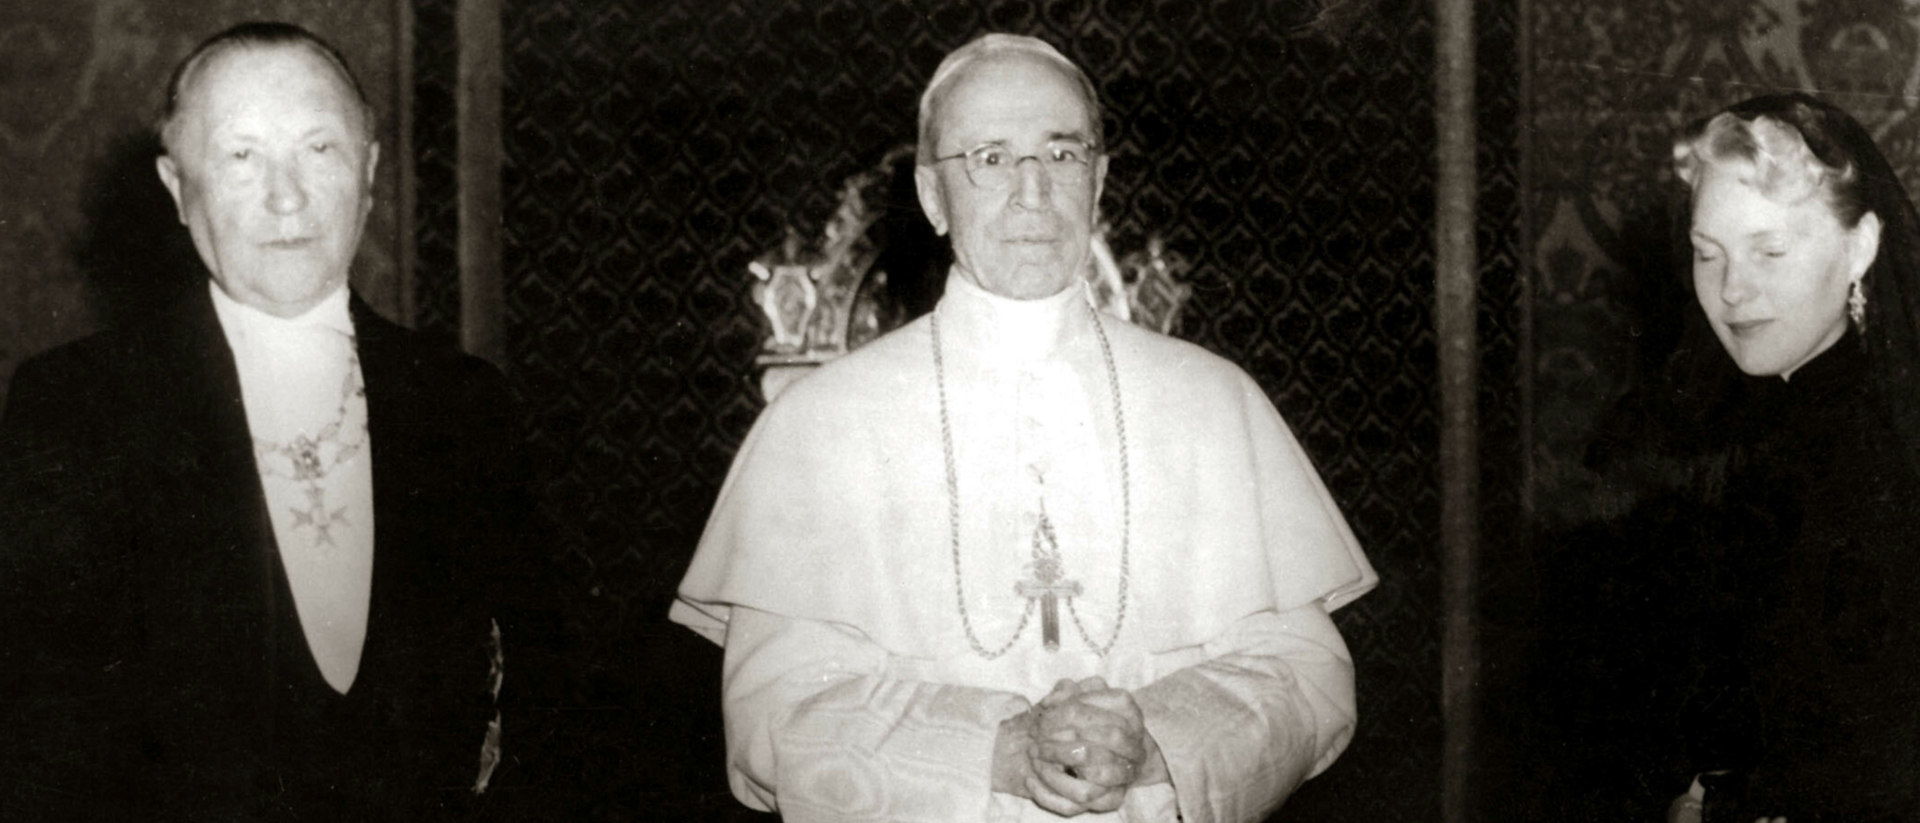 Papst Pius XII. empfing 1957 den deutschen Bundeskanzler Konrad Adenauer (links) und dessen Tochter zu einer Privat-Audienz. Adenauer war Witwer.